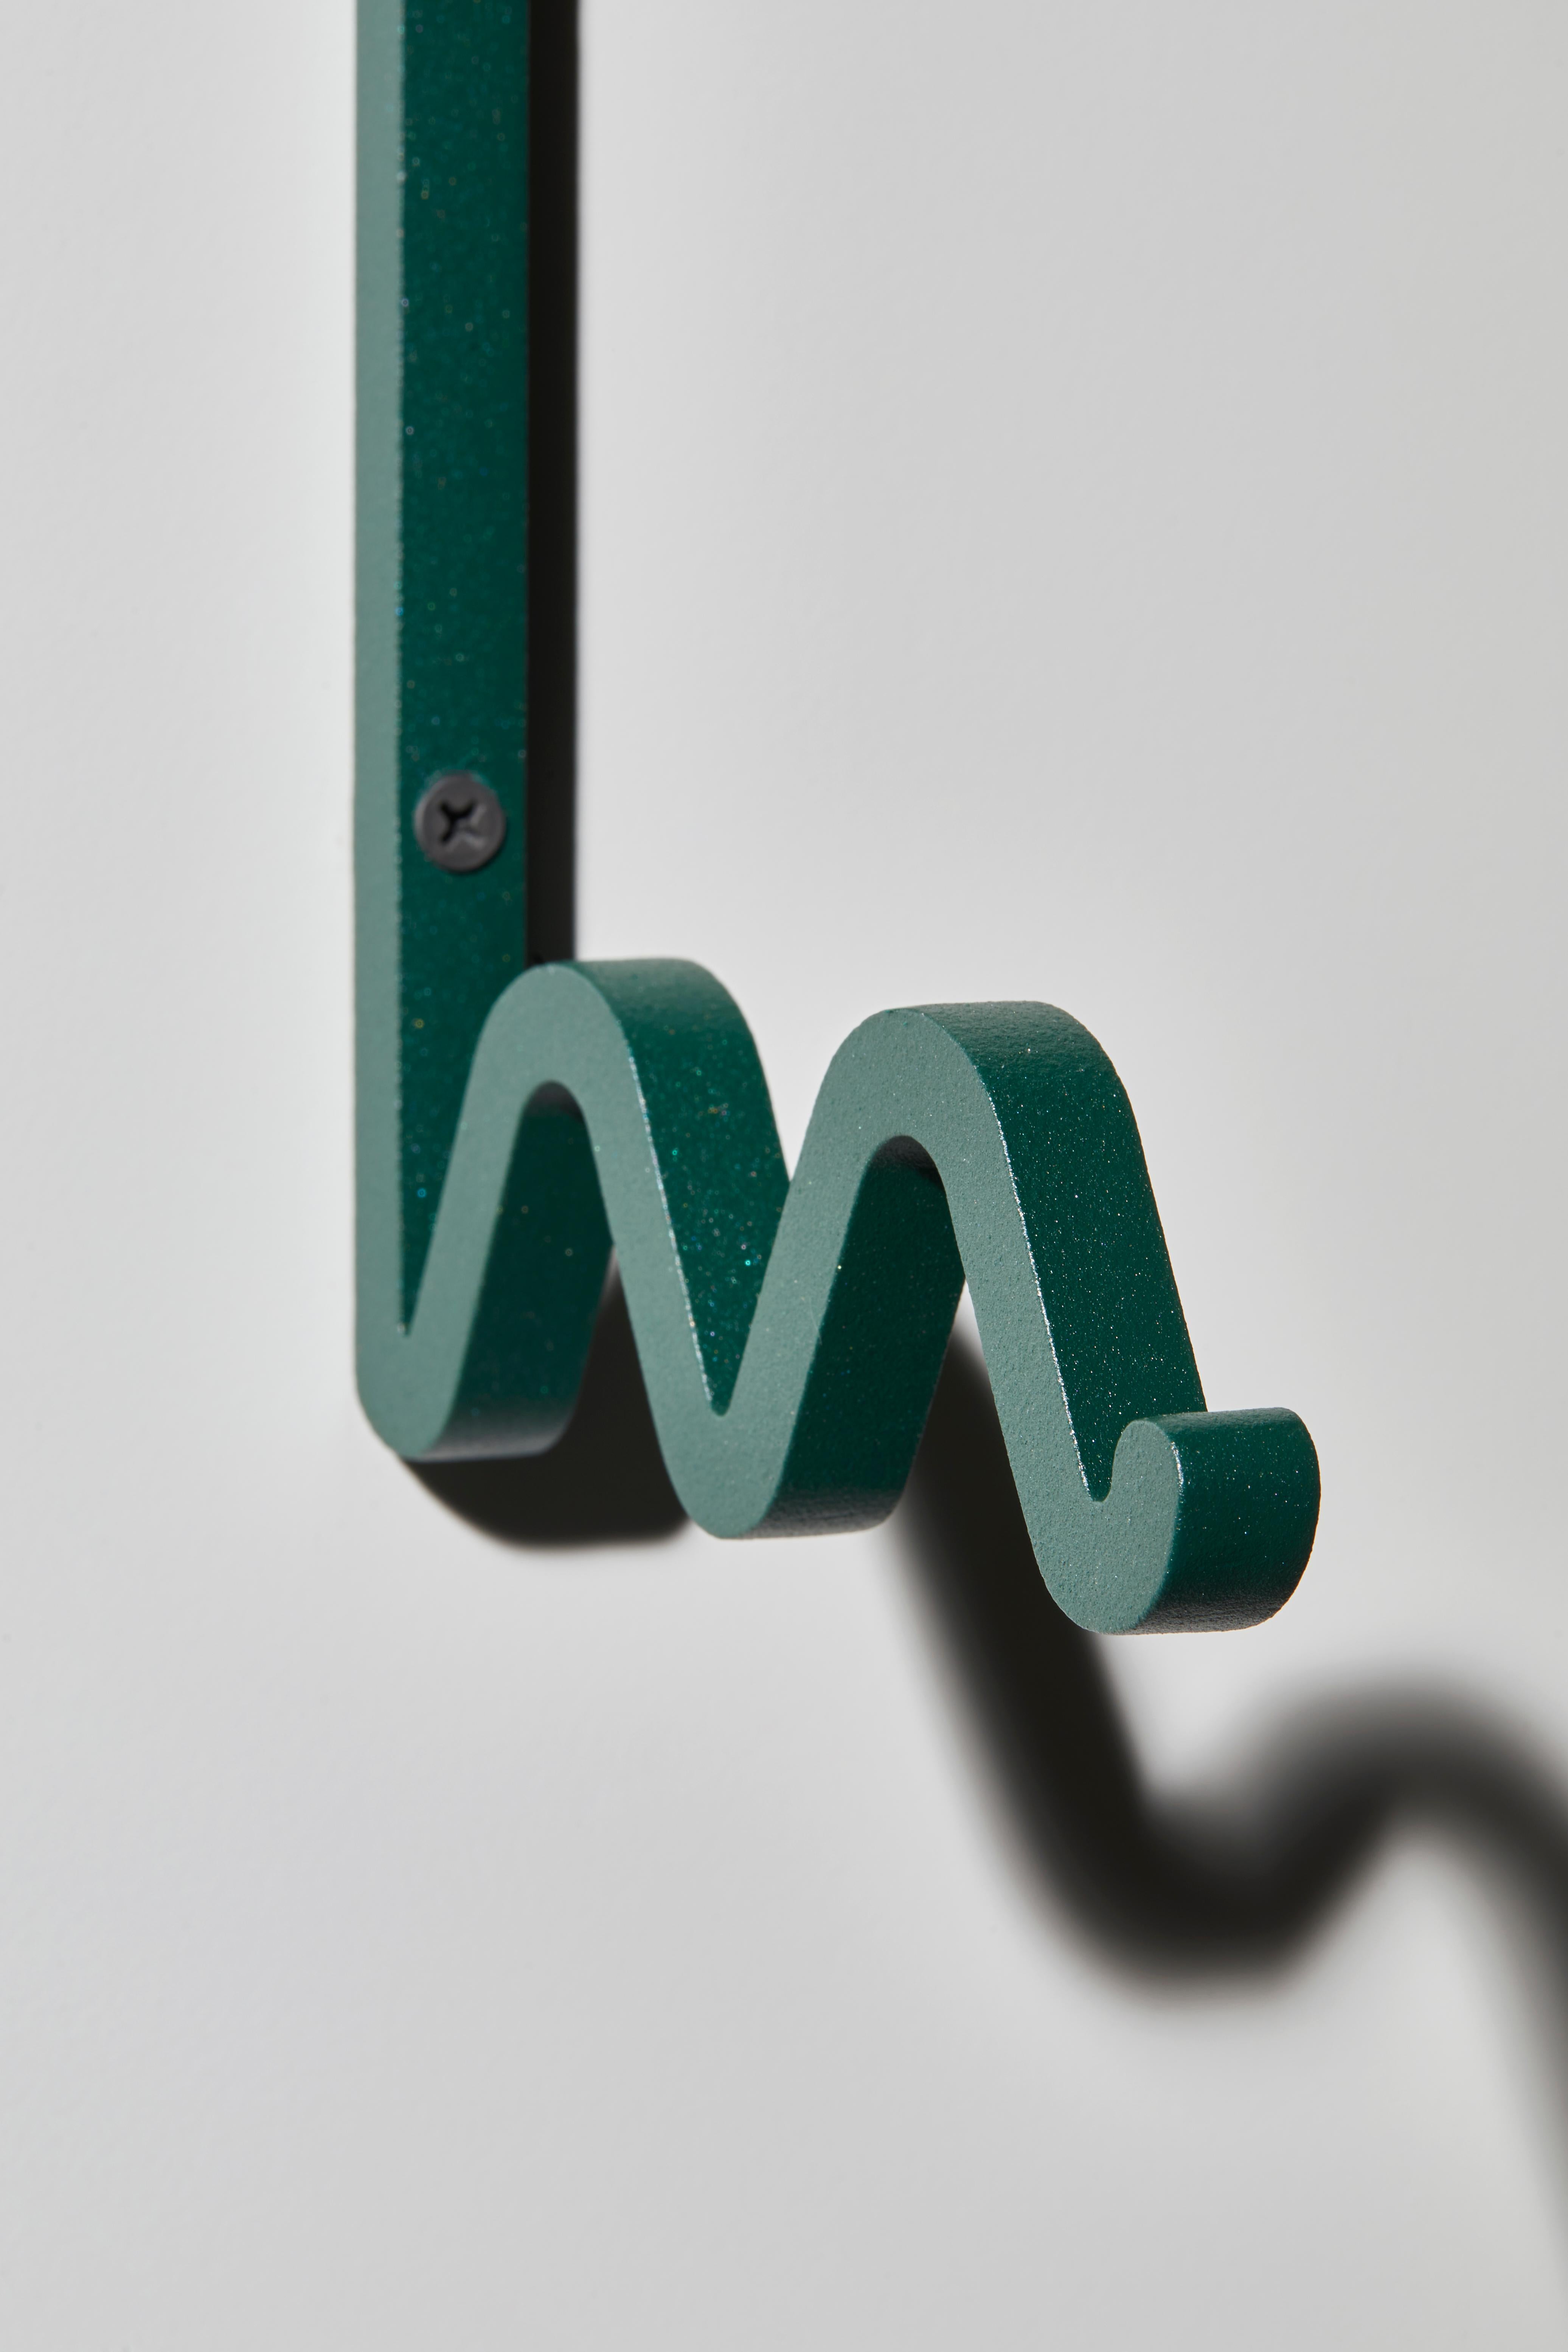 Czech Green Zag, Coat Hooks by Bling Design Studio for La Chance For Sale